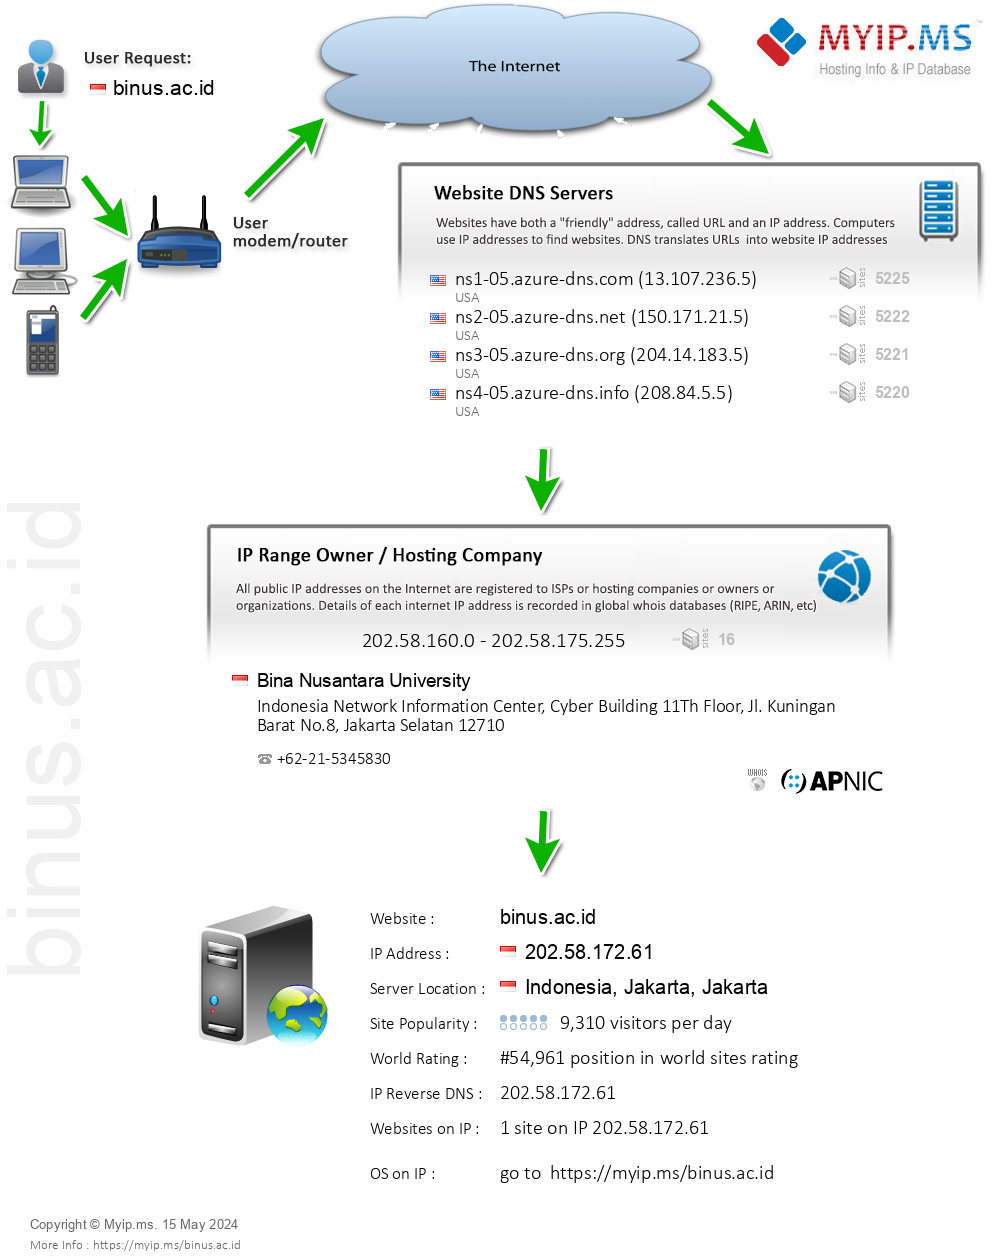 Binus.ac.id - Website Hosting Visual IP Diagram